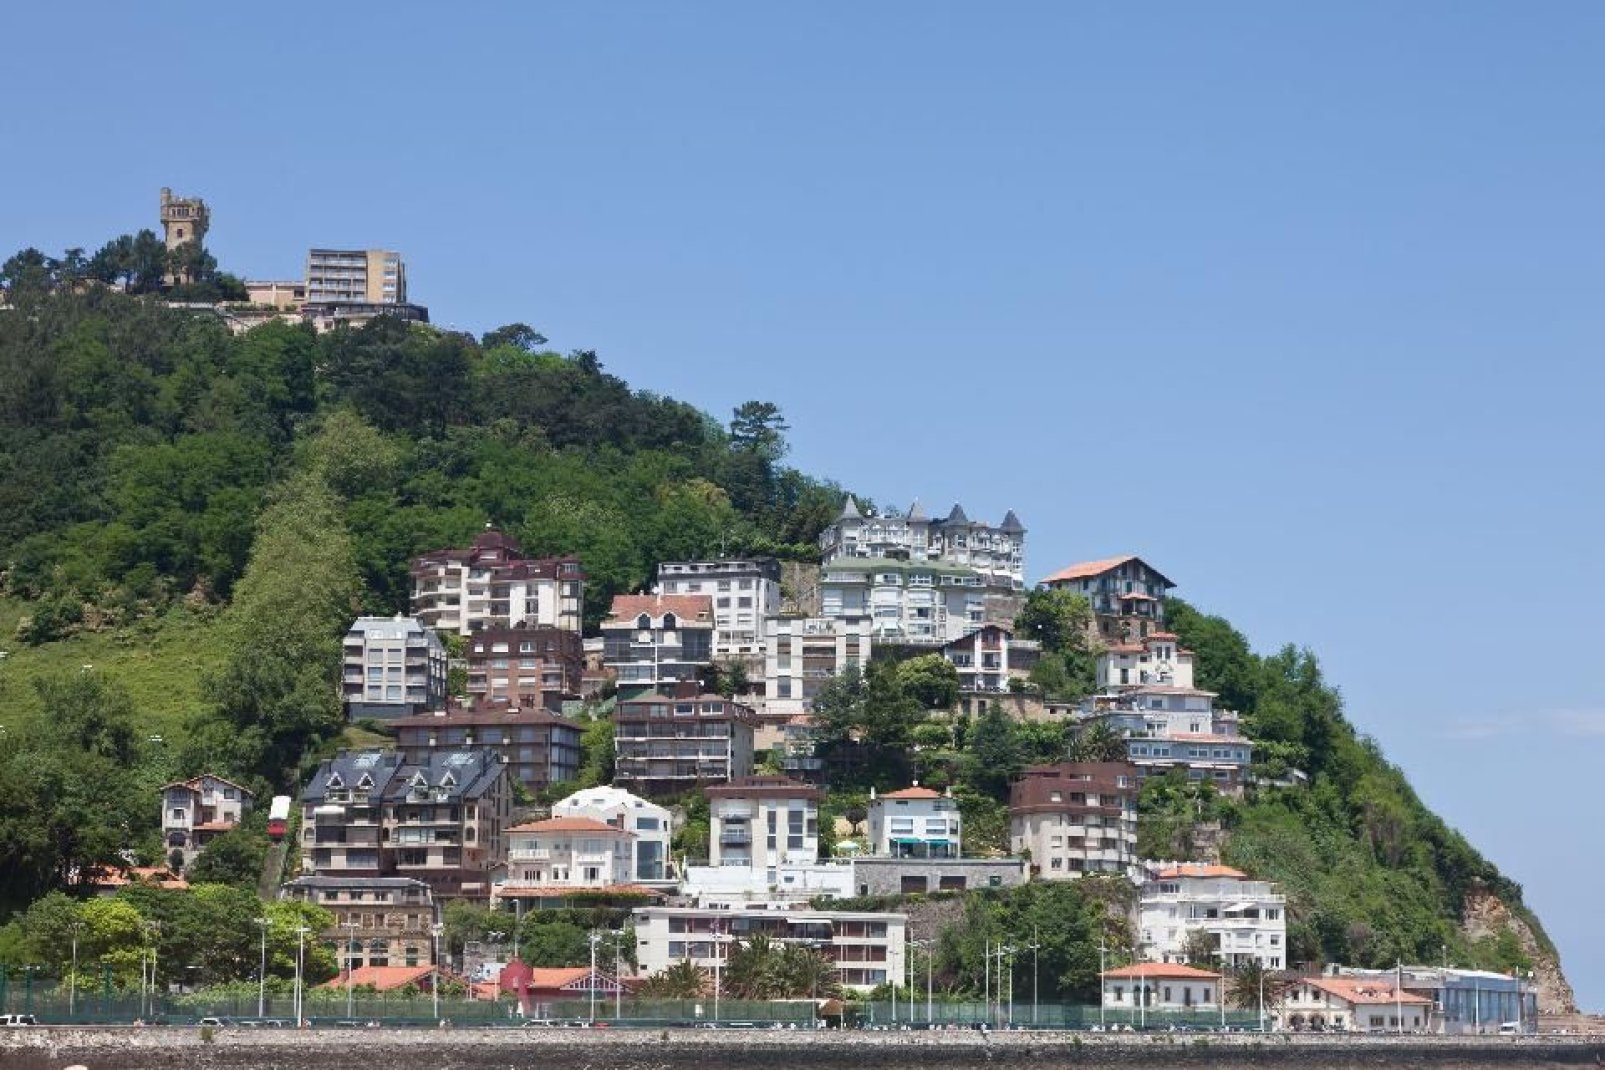 Auf den Hügeln stehen zahlreiche Häuser.